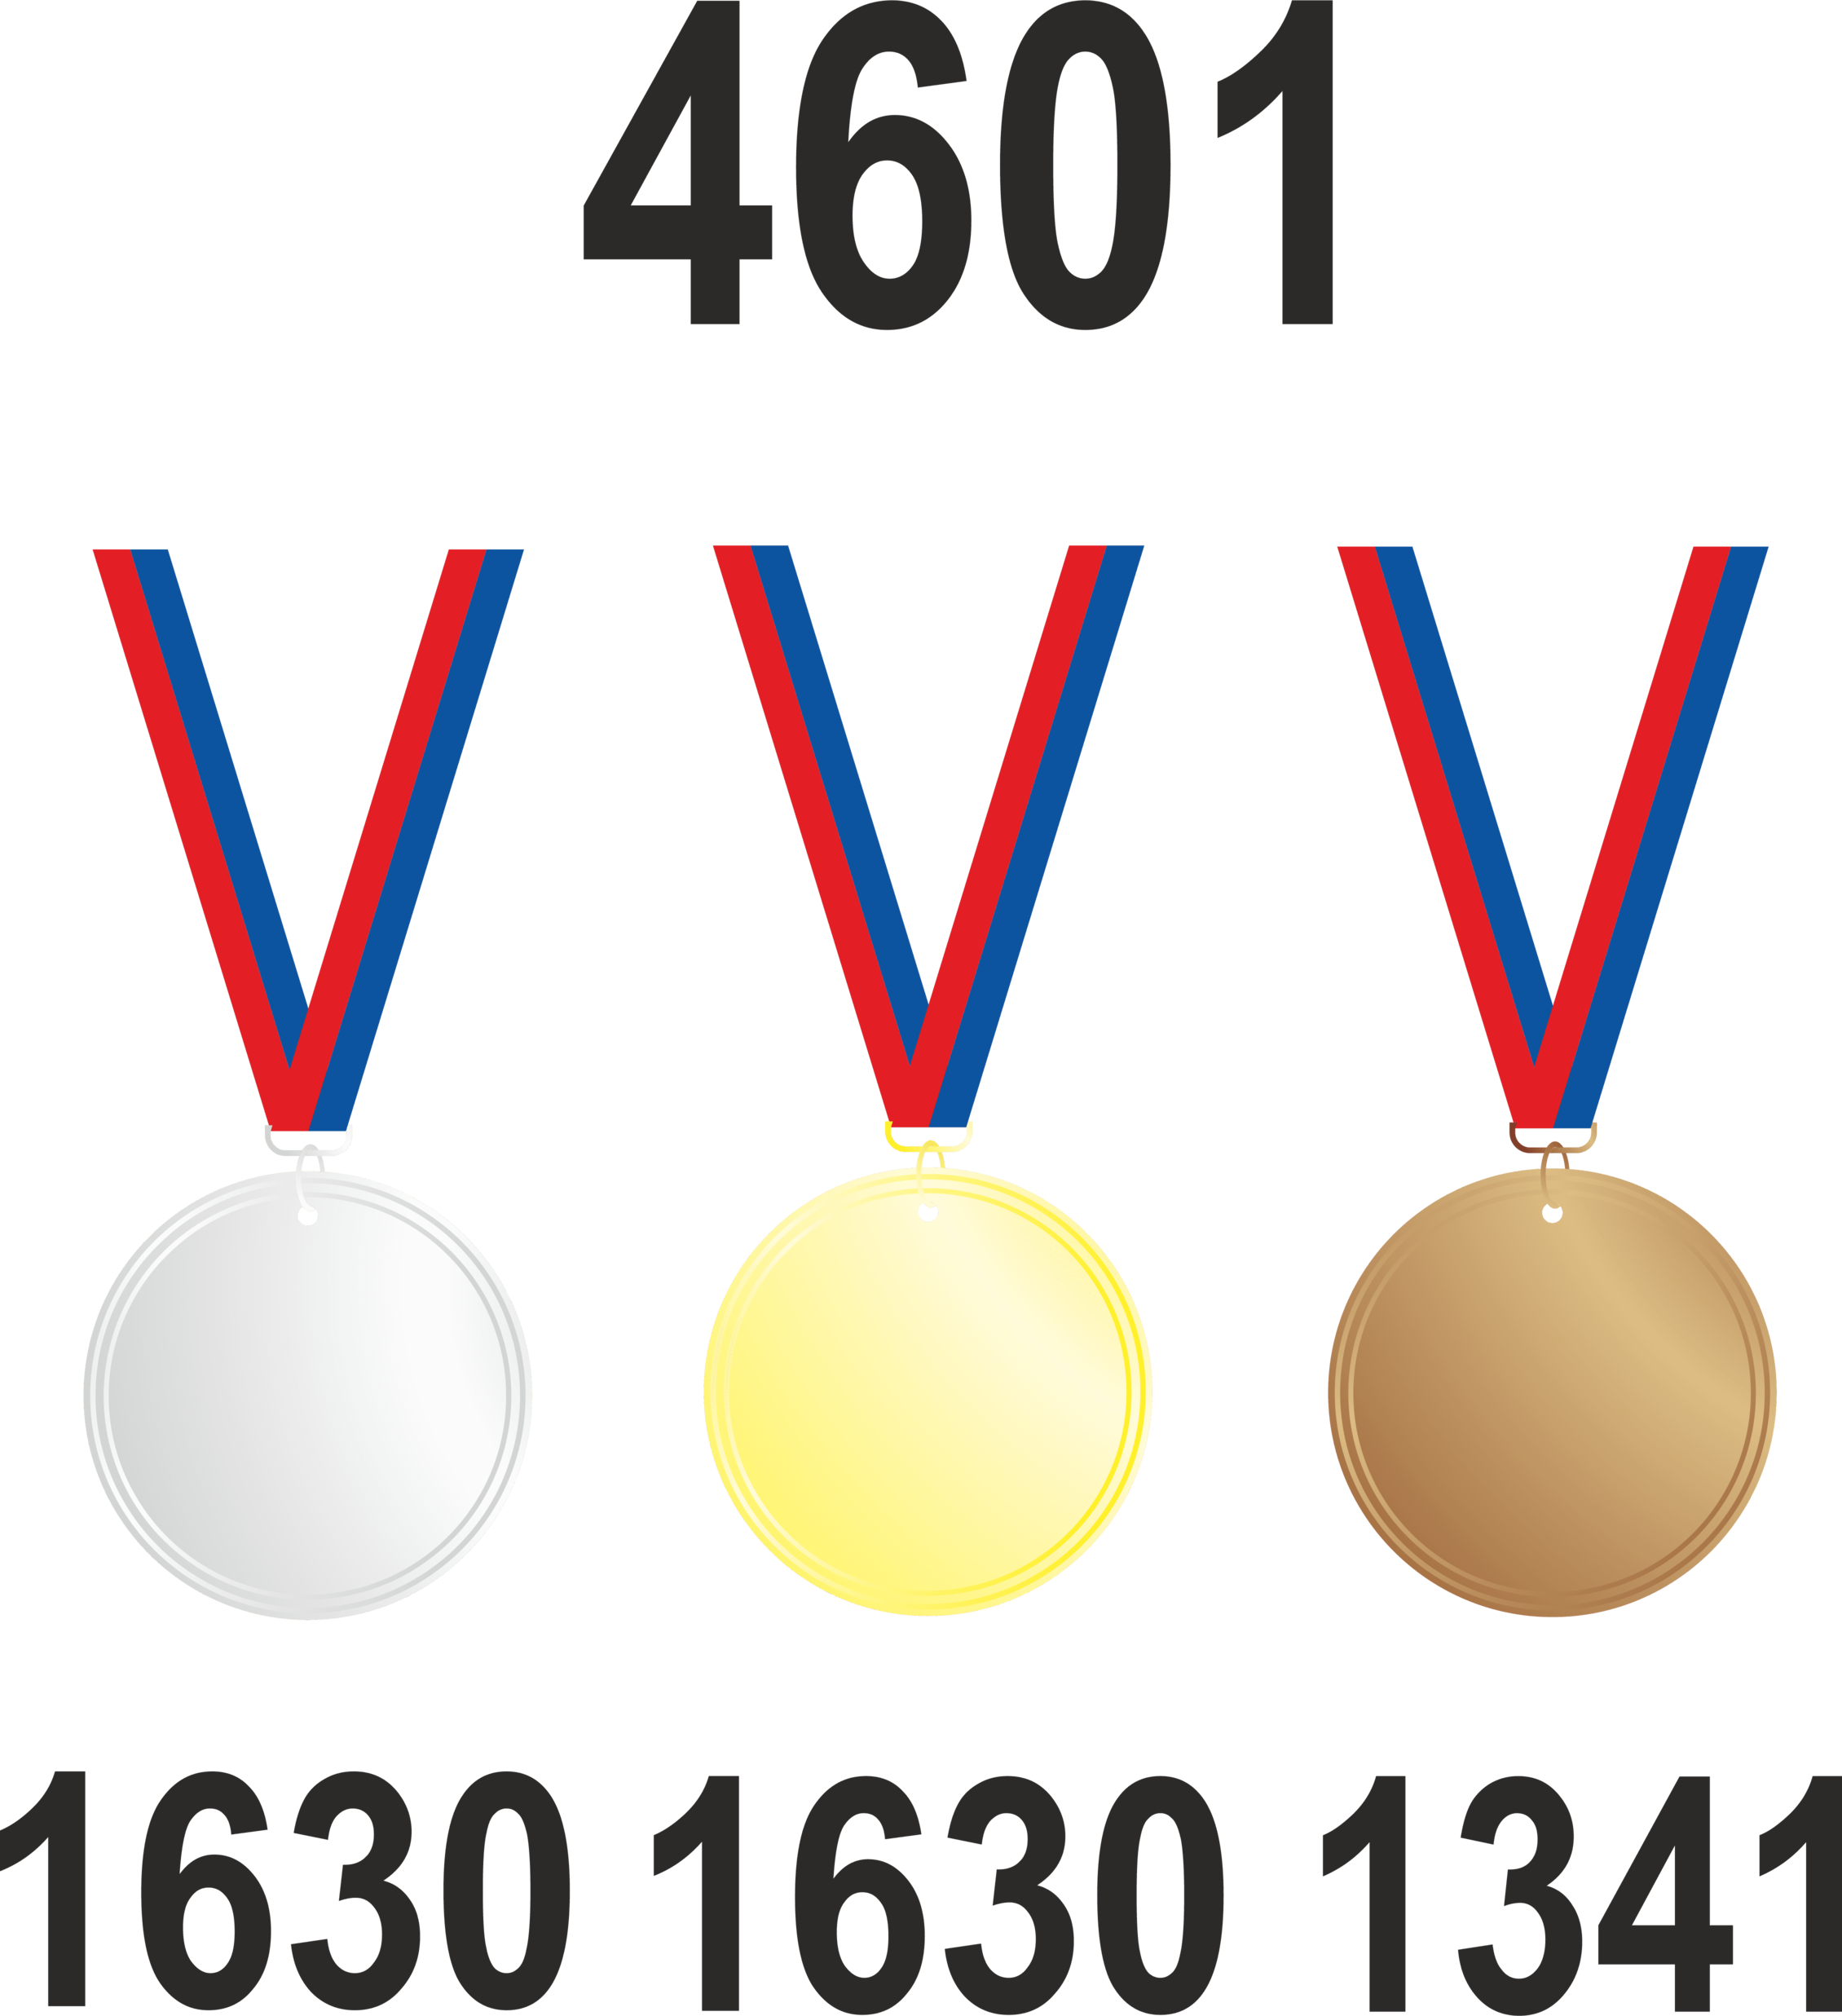 Количество завоеванных медалей (4601 штук)